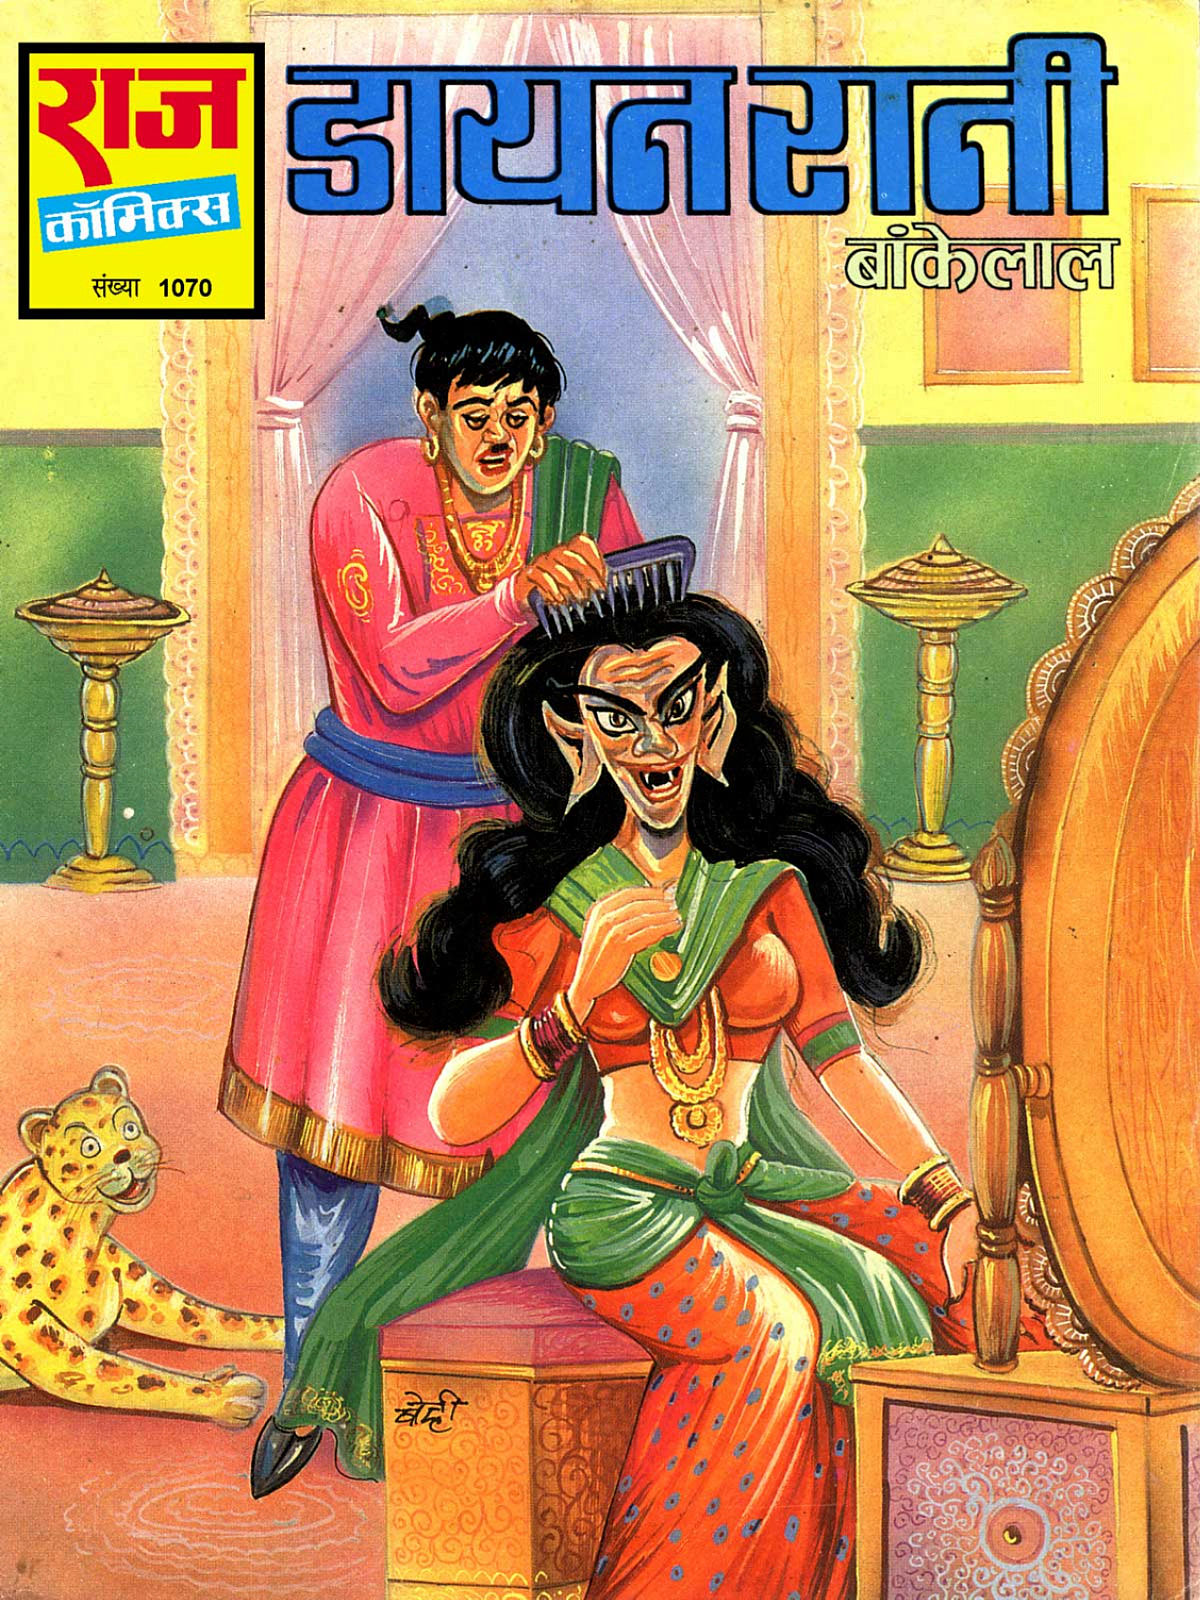 Hindi comic